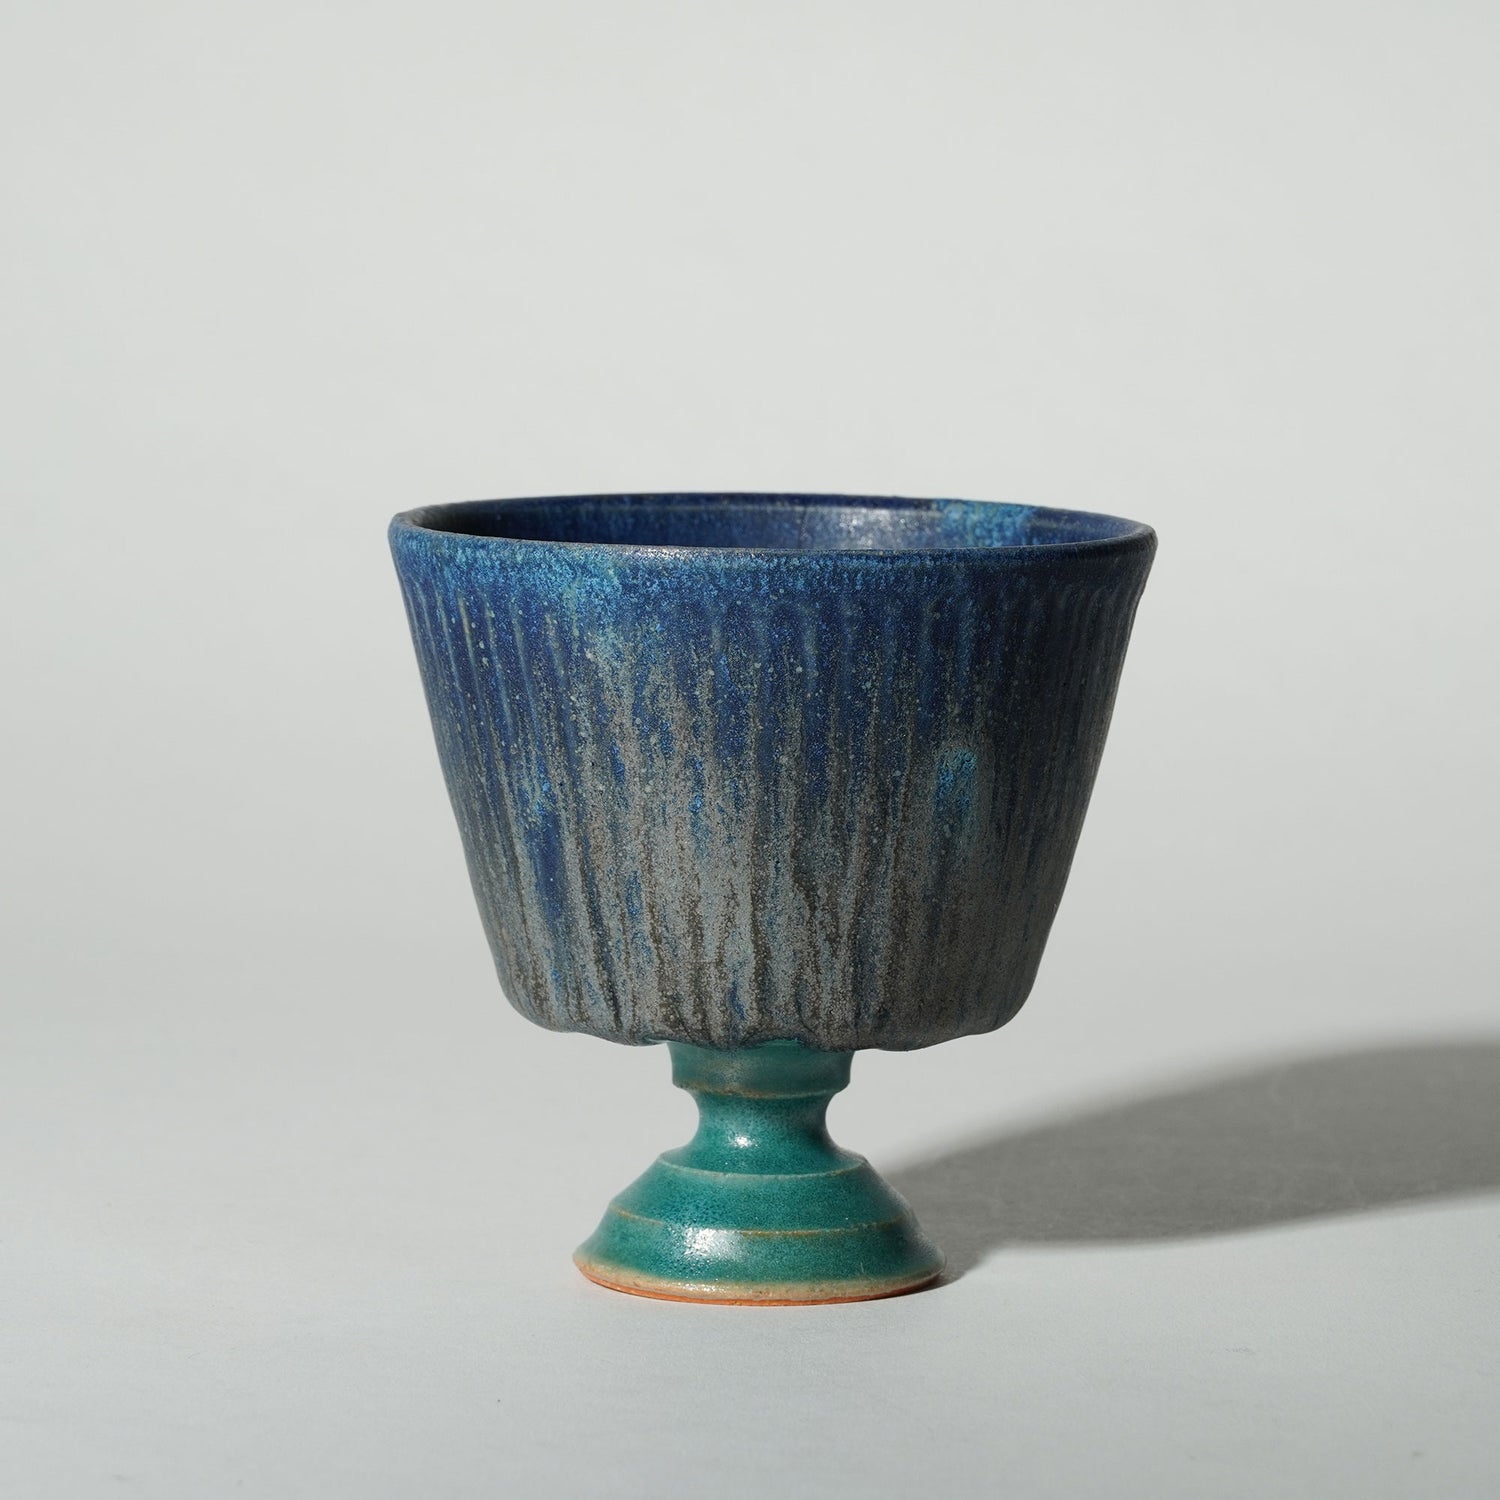 aya Ogawa Japanese pottery Tokyo vase vessel